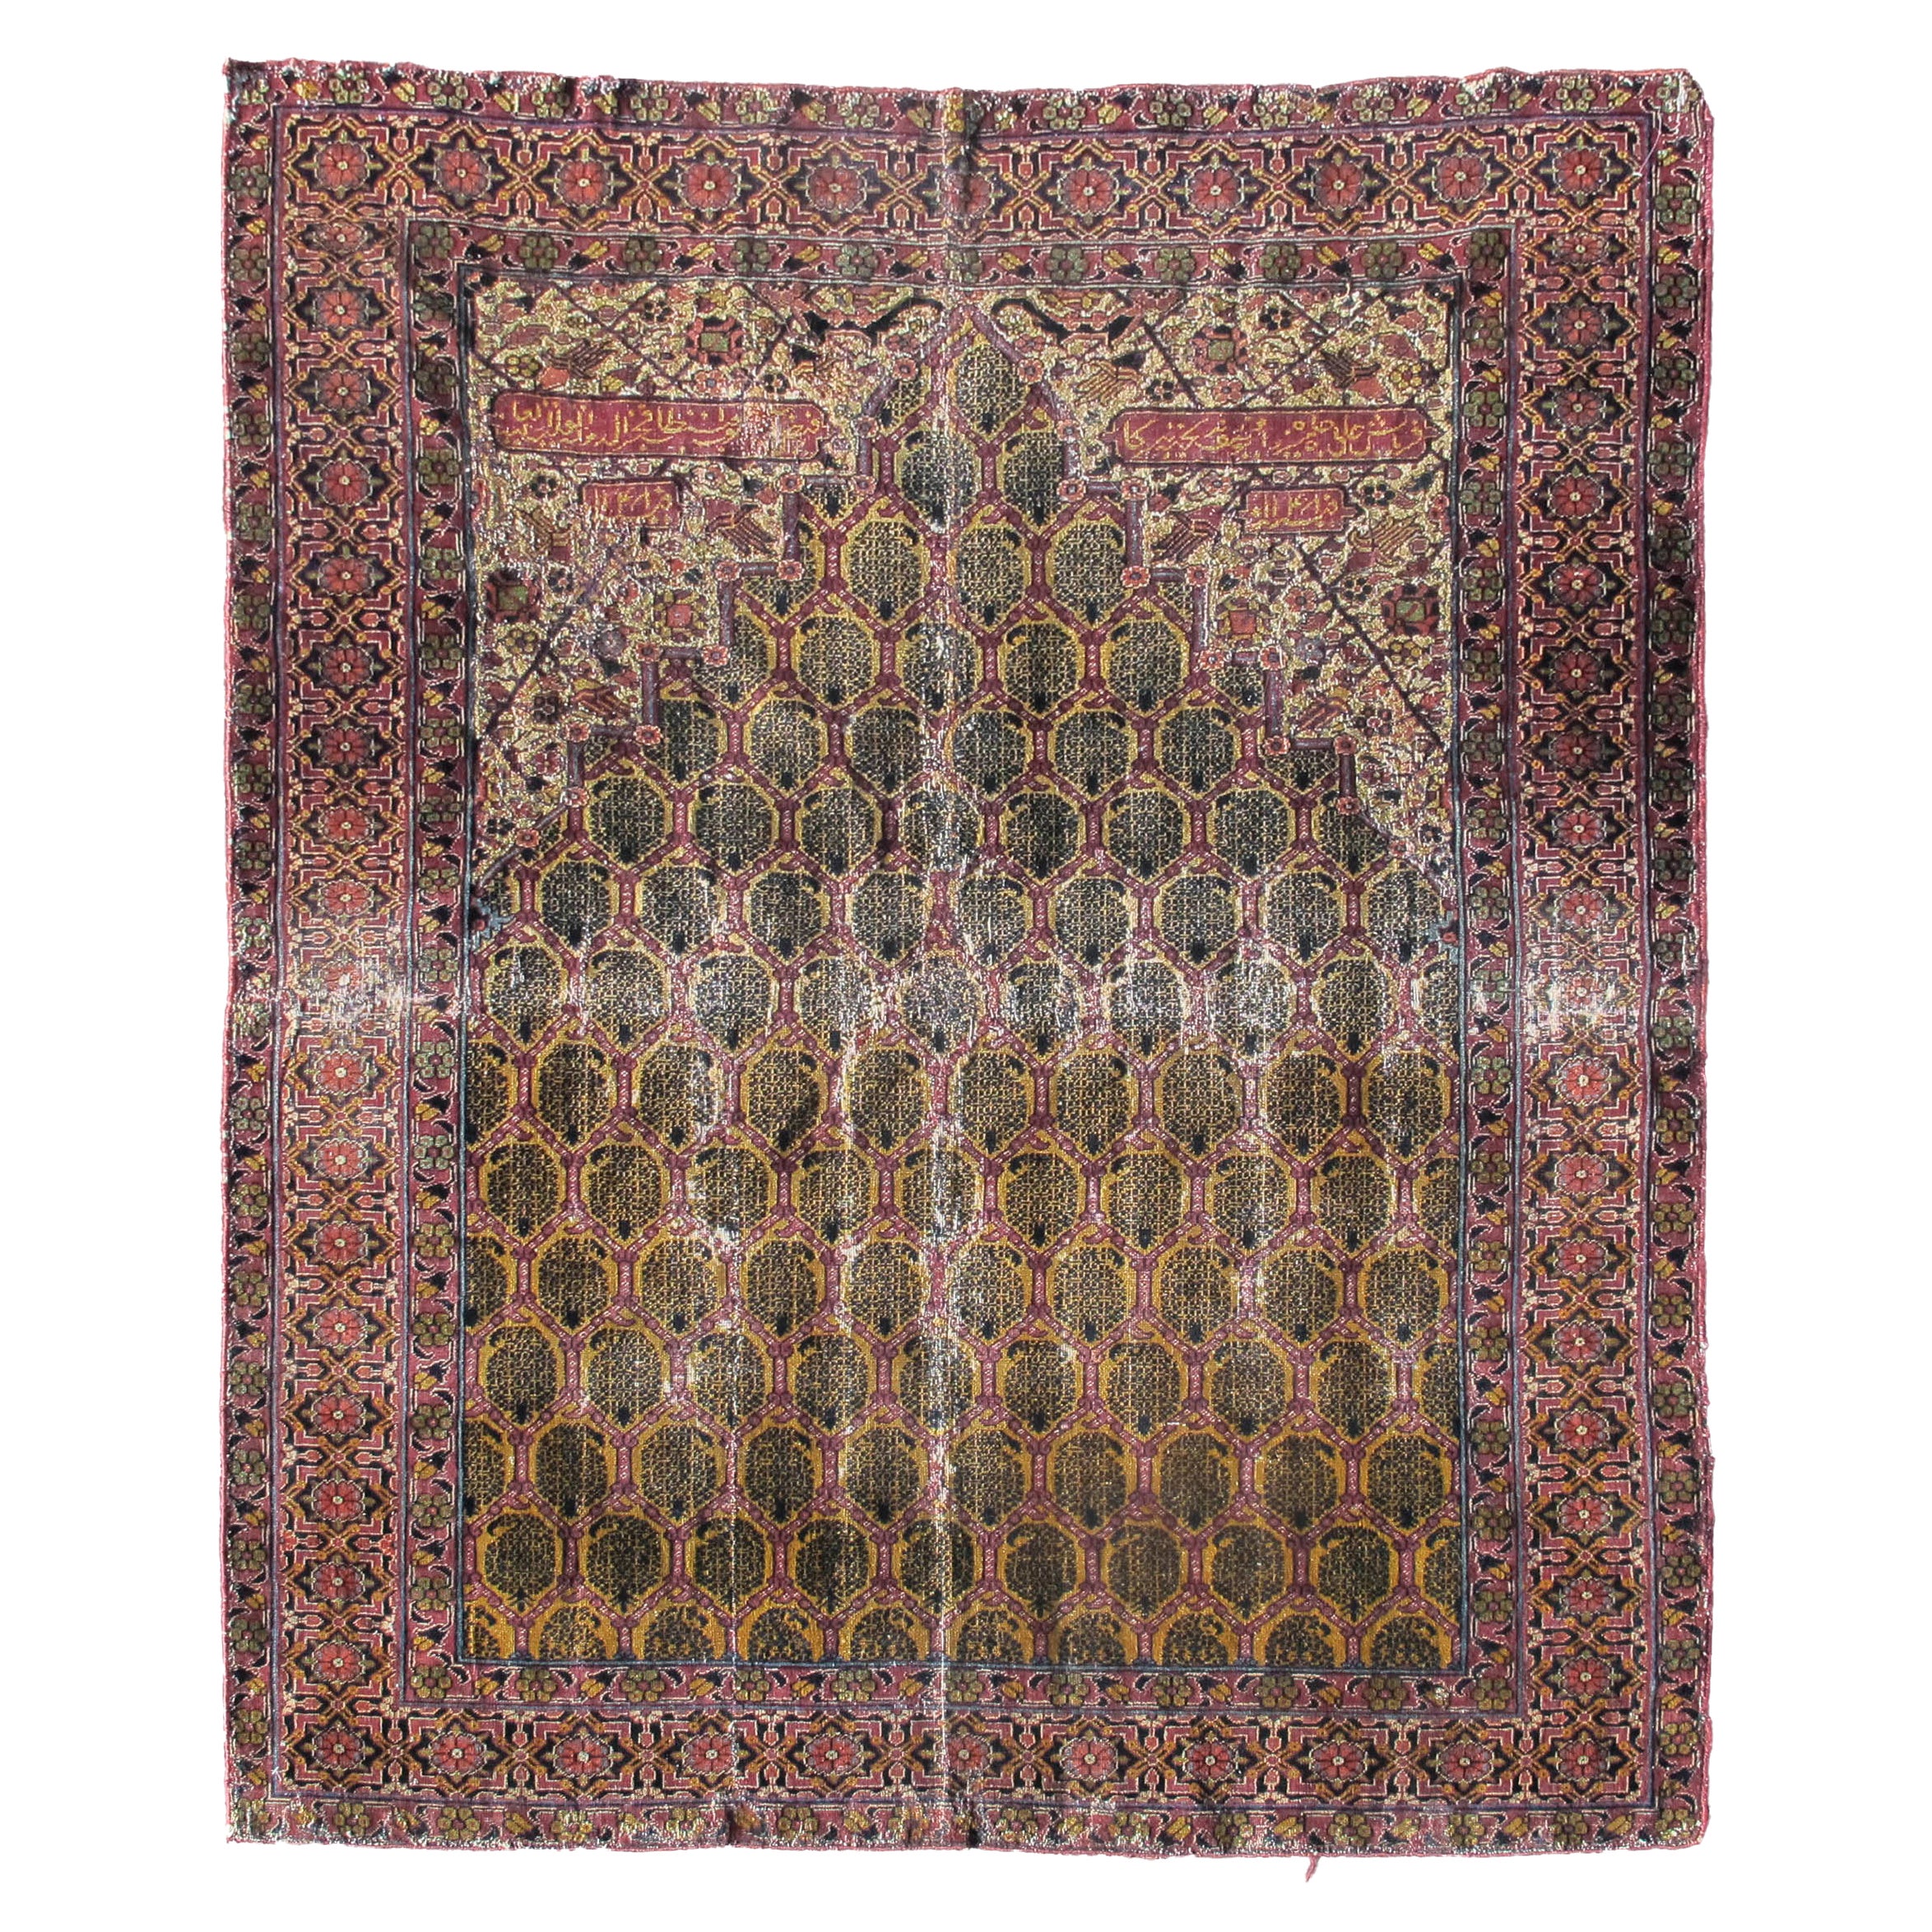 Antiker indo-persischer Gebetsteppich, frühes 19. Jahrhundert